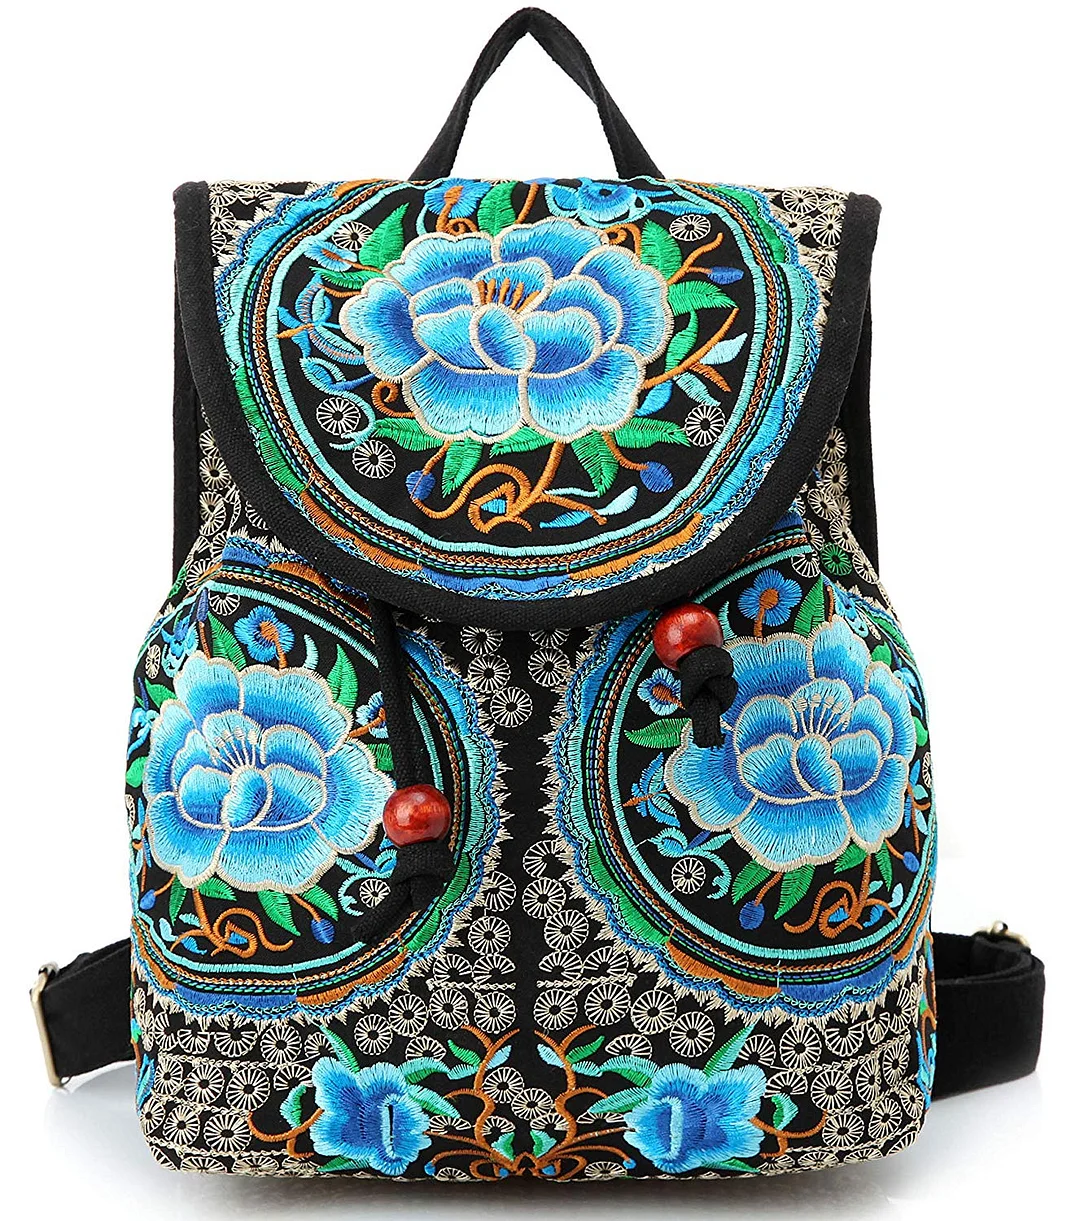 Backpack Purse for Women Vintage Handbag Small Drawstring Casual Travel Shoulder Bag Daypack…